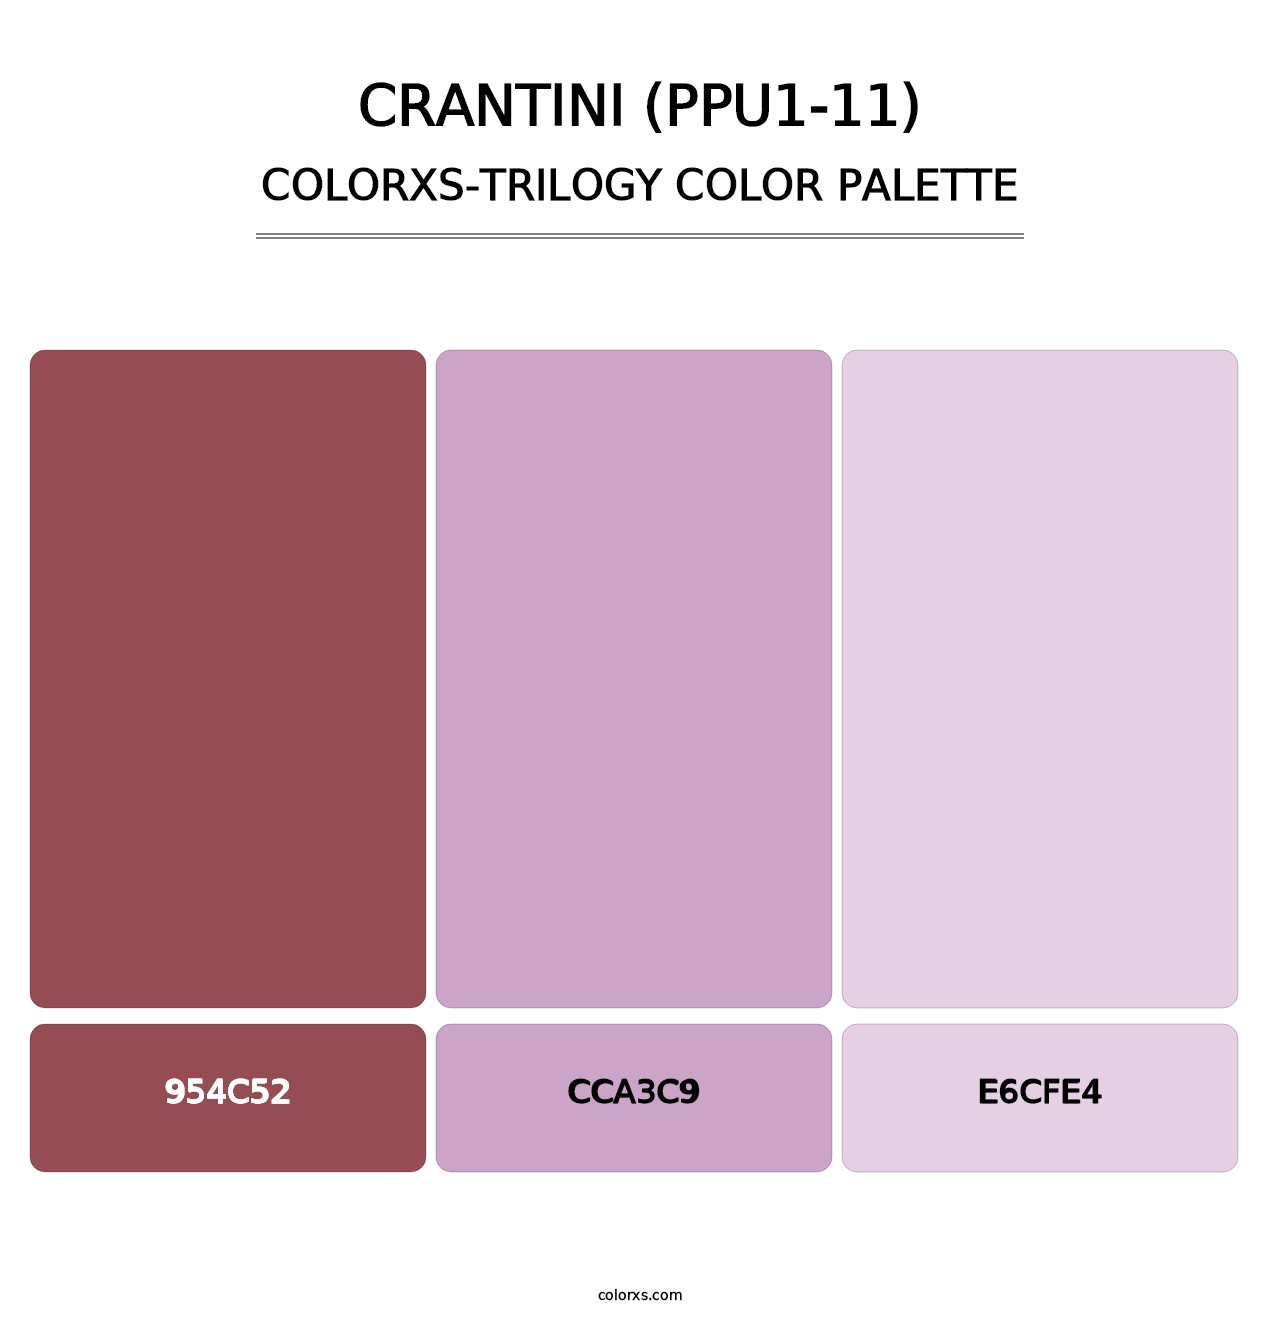 Crantini (PPU1-11) - Colorxs Trilogy Palette